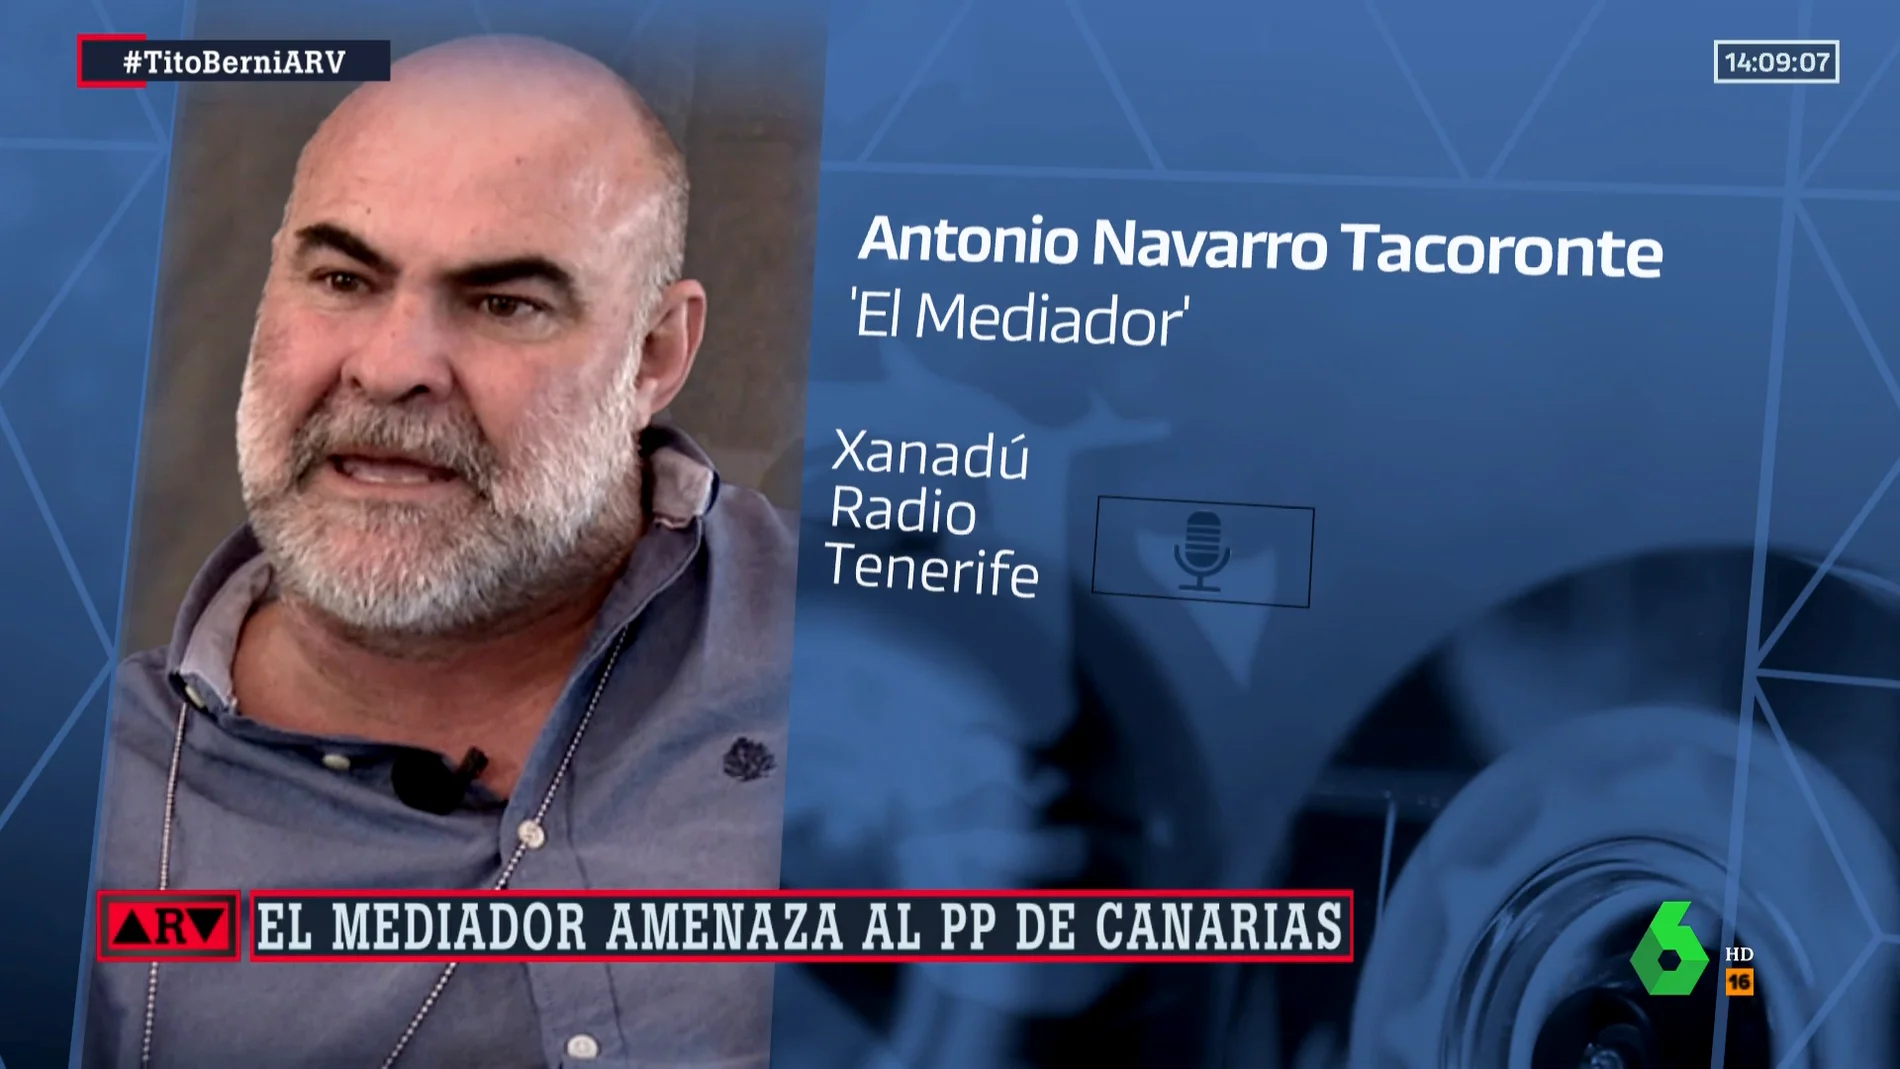 El 'Mediador' amenaza ahora con salpicar al presidente del PP en Canarias